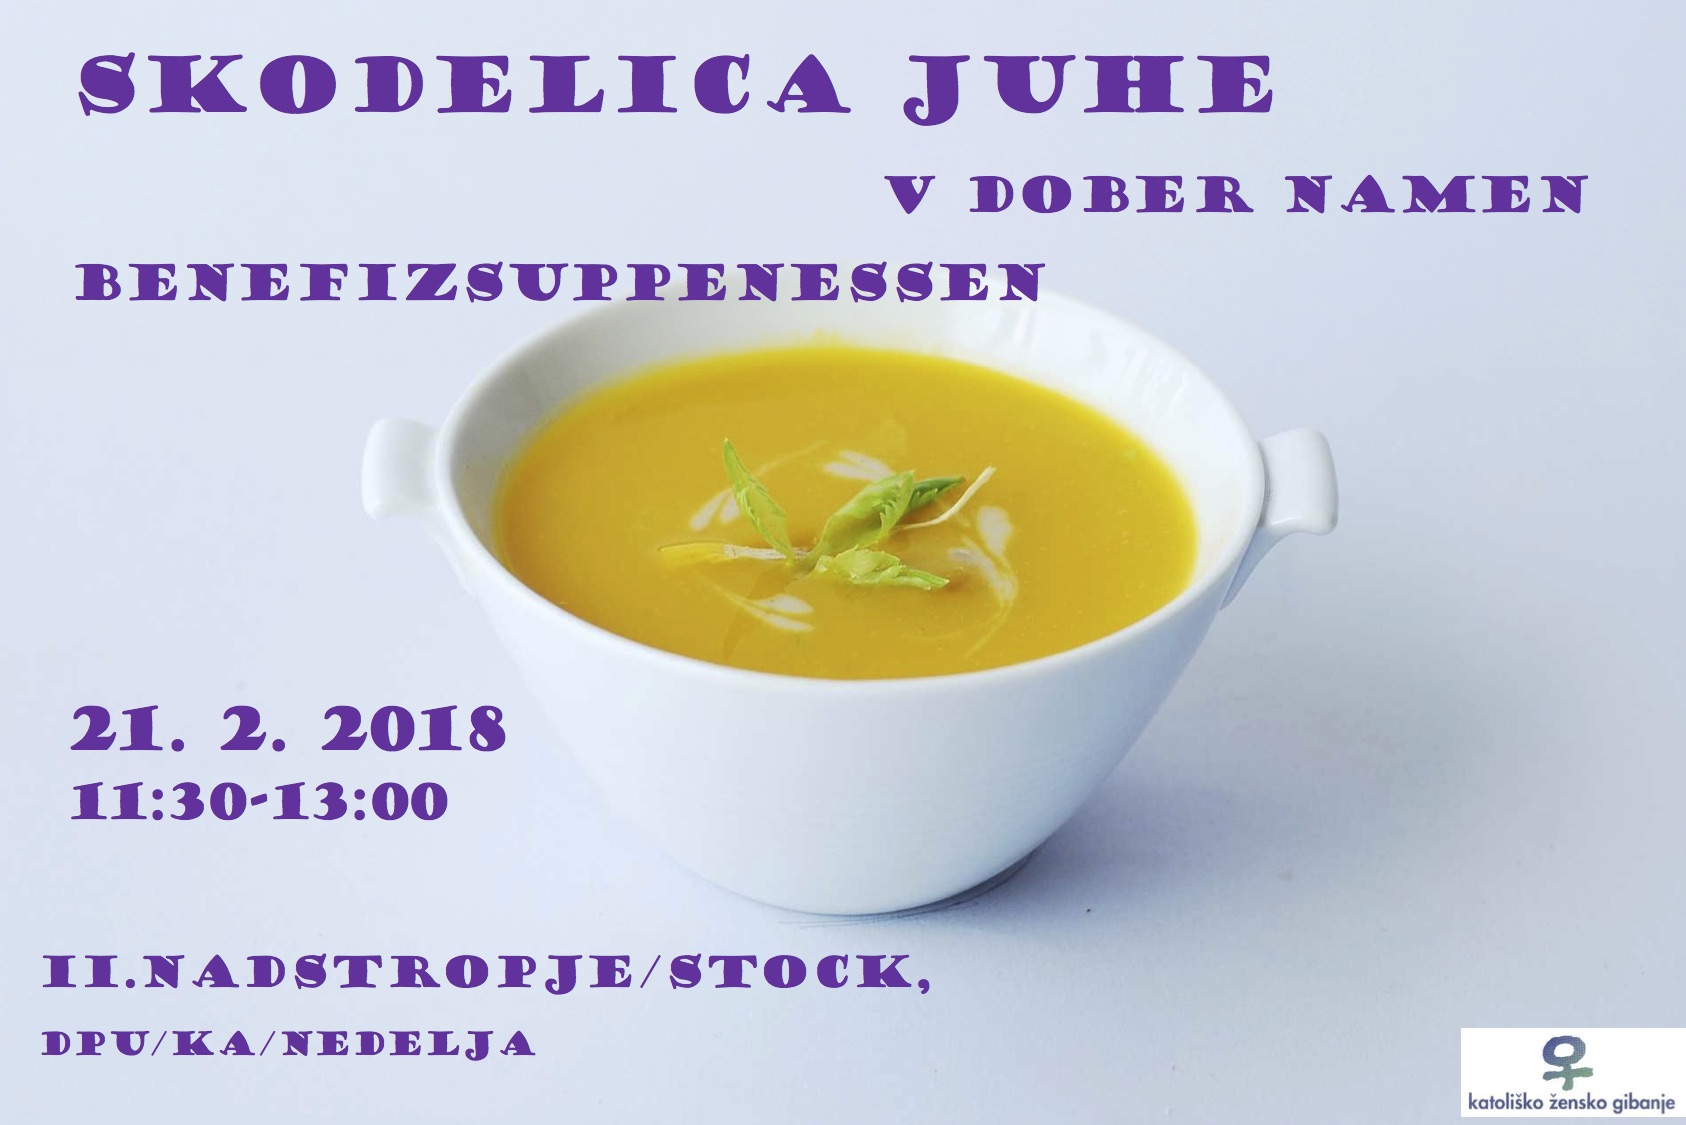 Skodelica_juhe_vabilo_2018